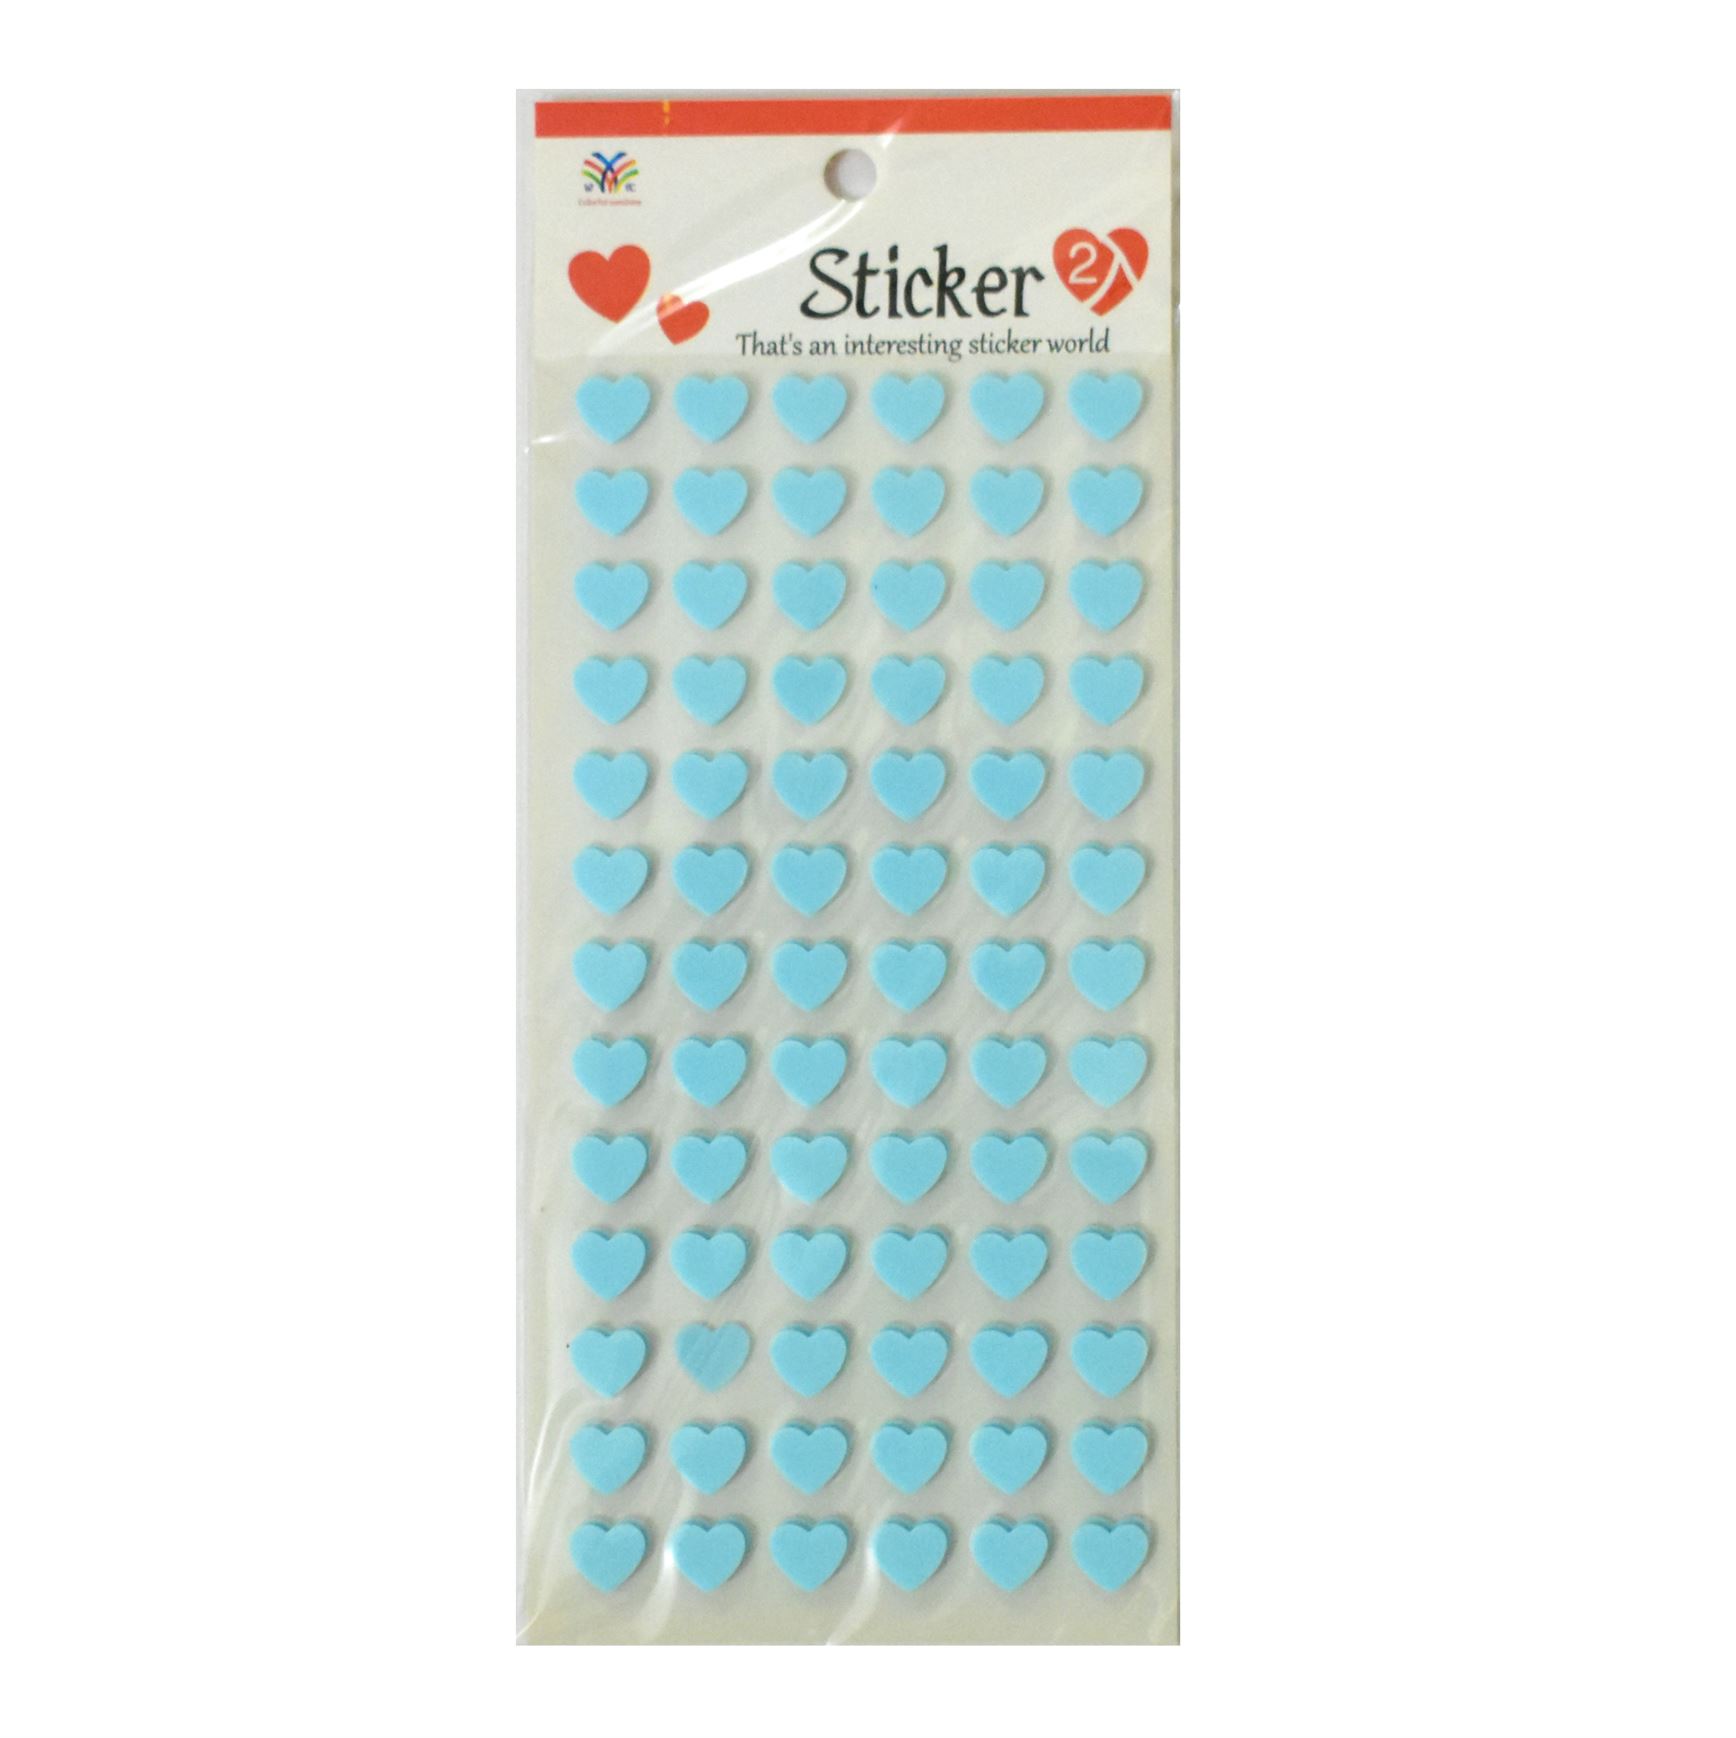 Blue Heart Foam Stickers – 2 Sheets – Srushti Patil